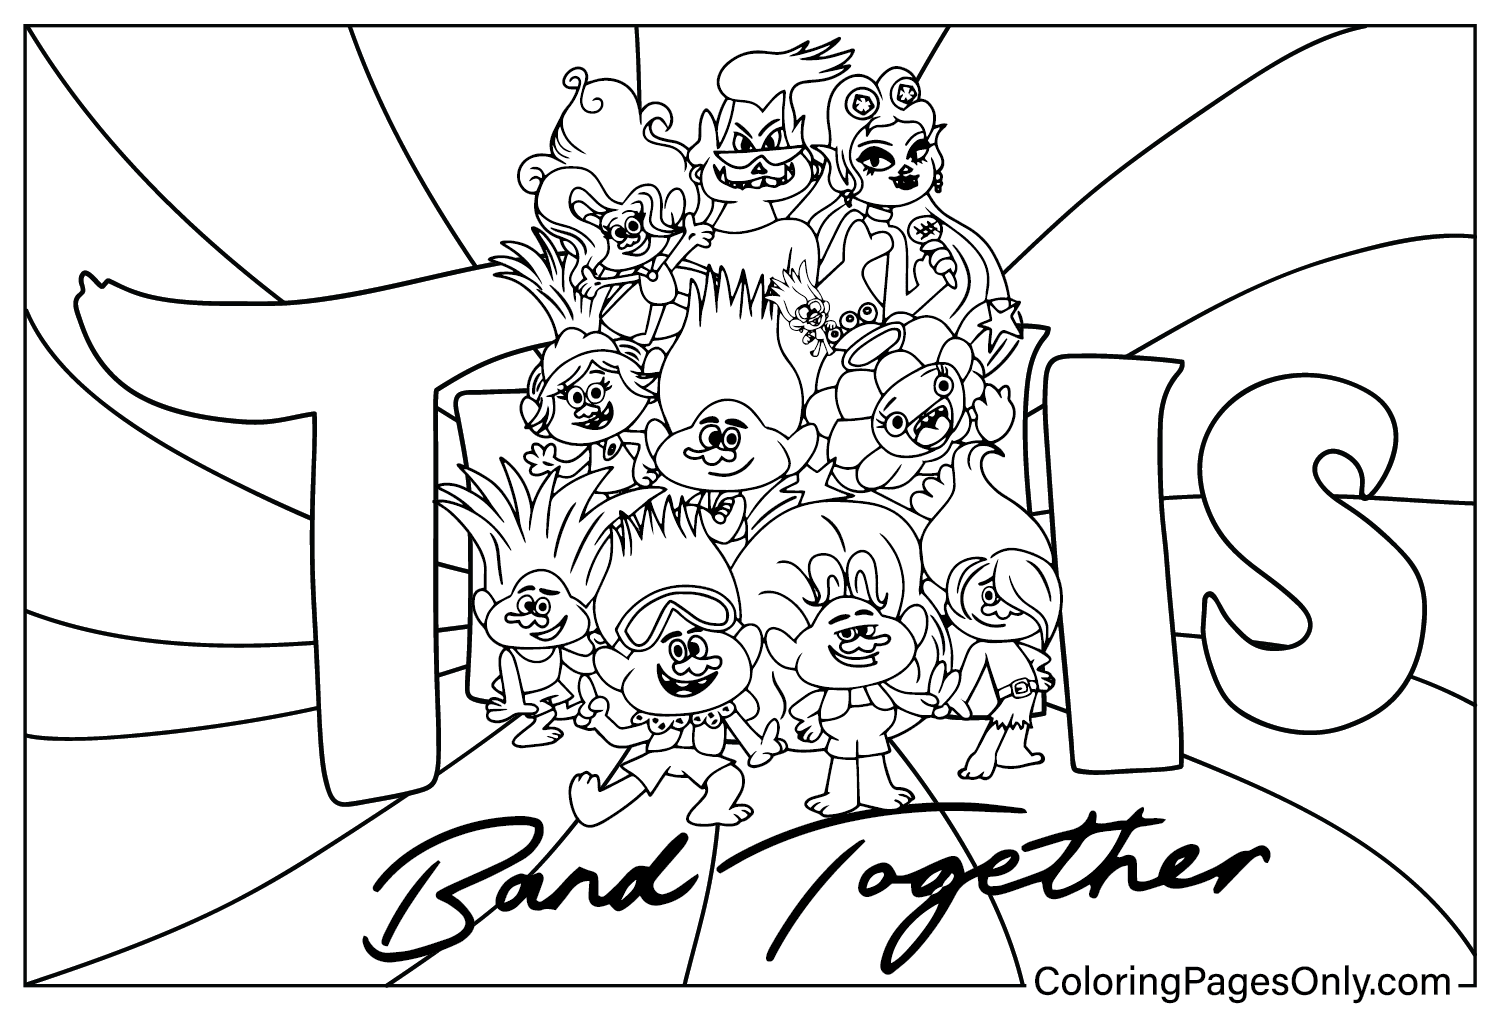 Trolls Band Together kleurplaat voor kinderen van Trolls Band Together